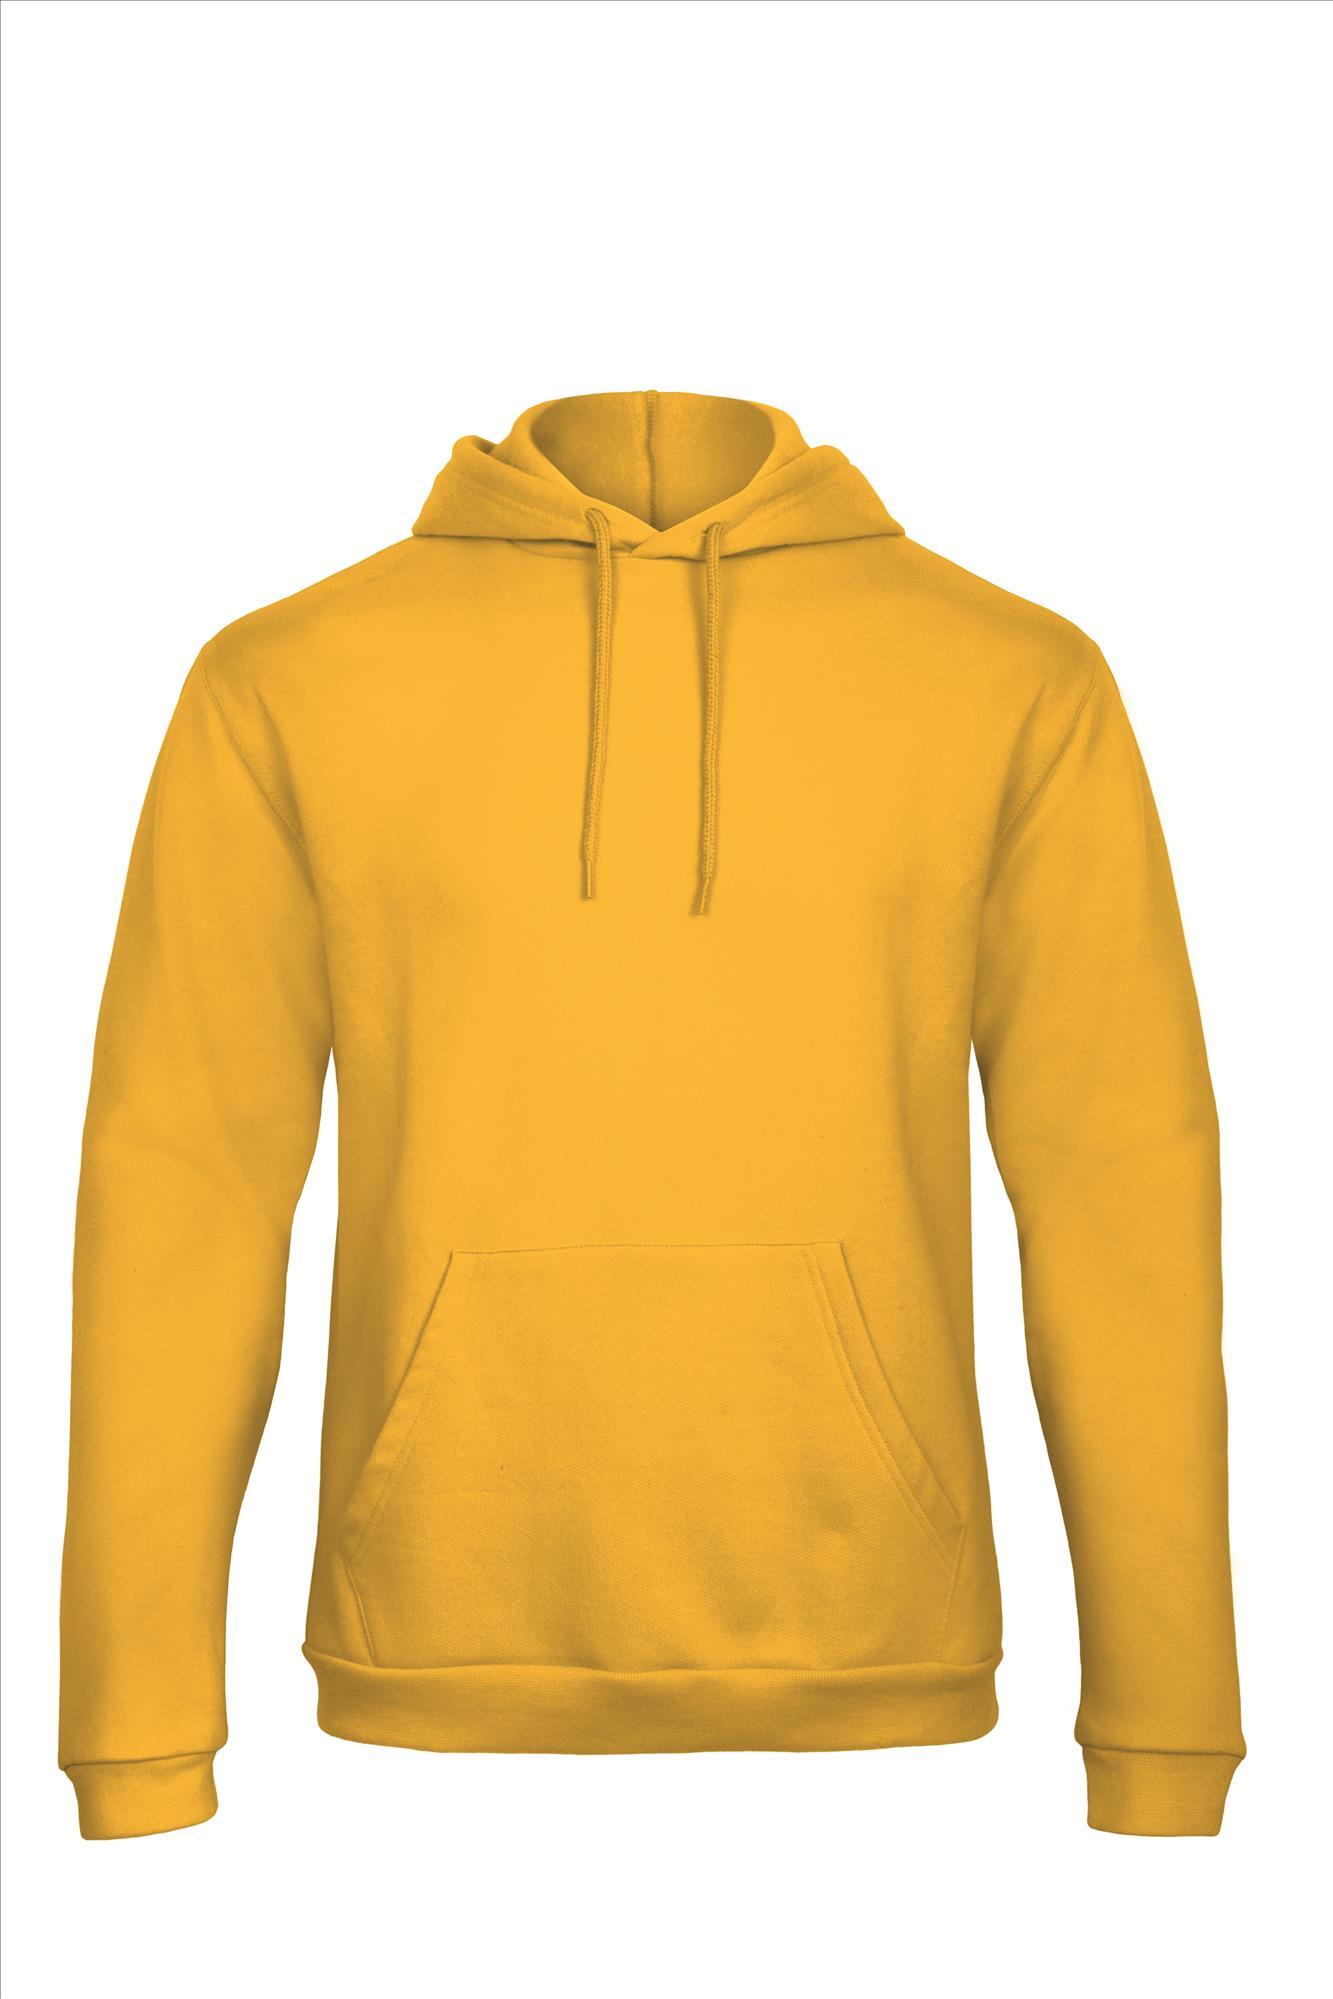 Gele hoodie Sweatshirt Unisex met capuchon heren bedrukbaar